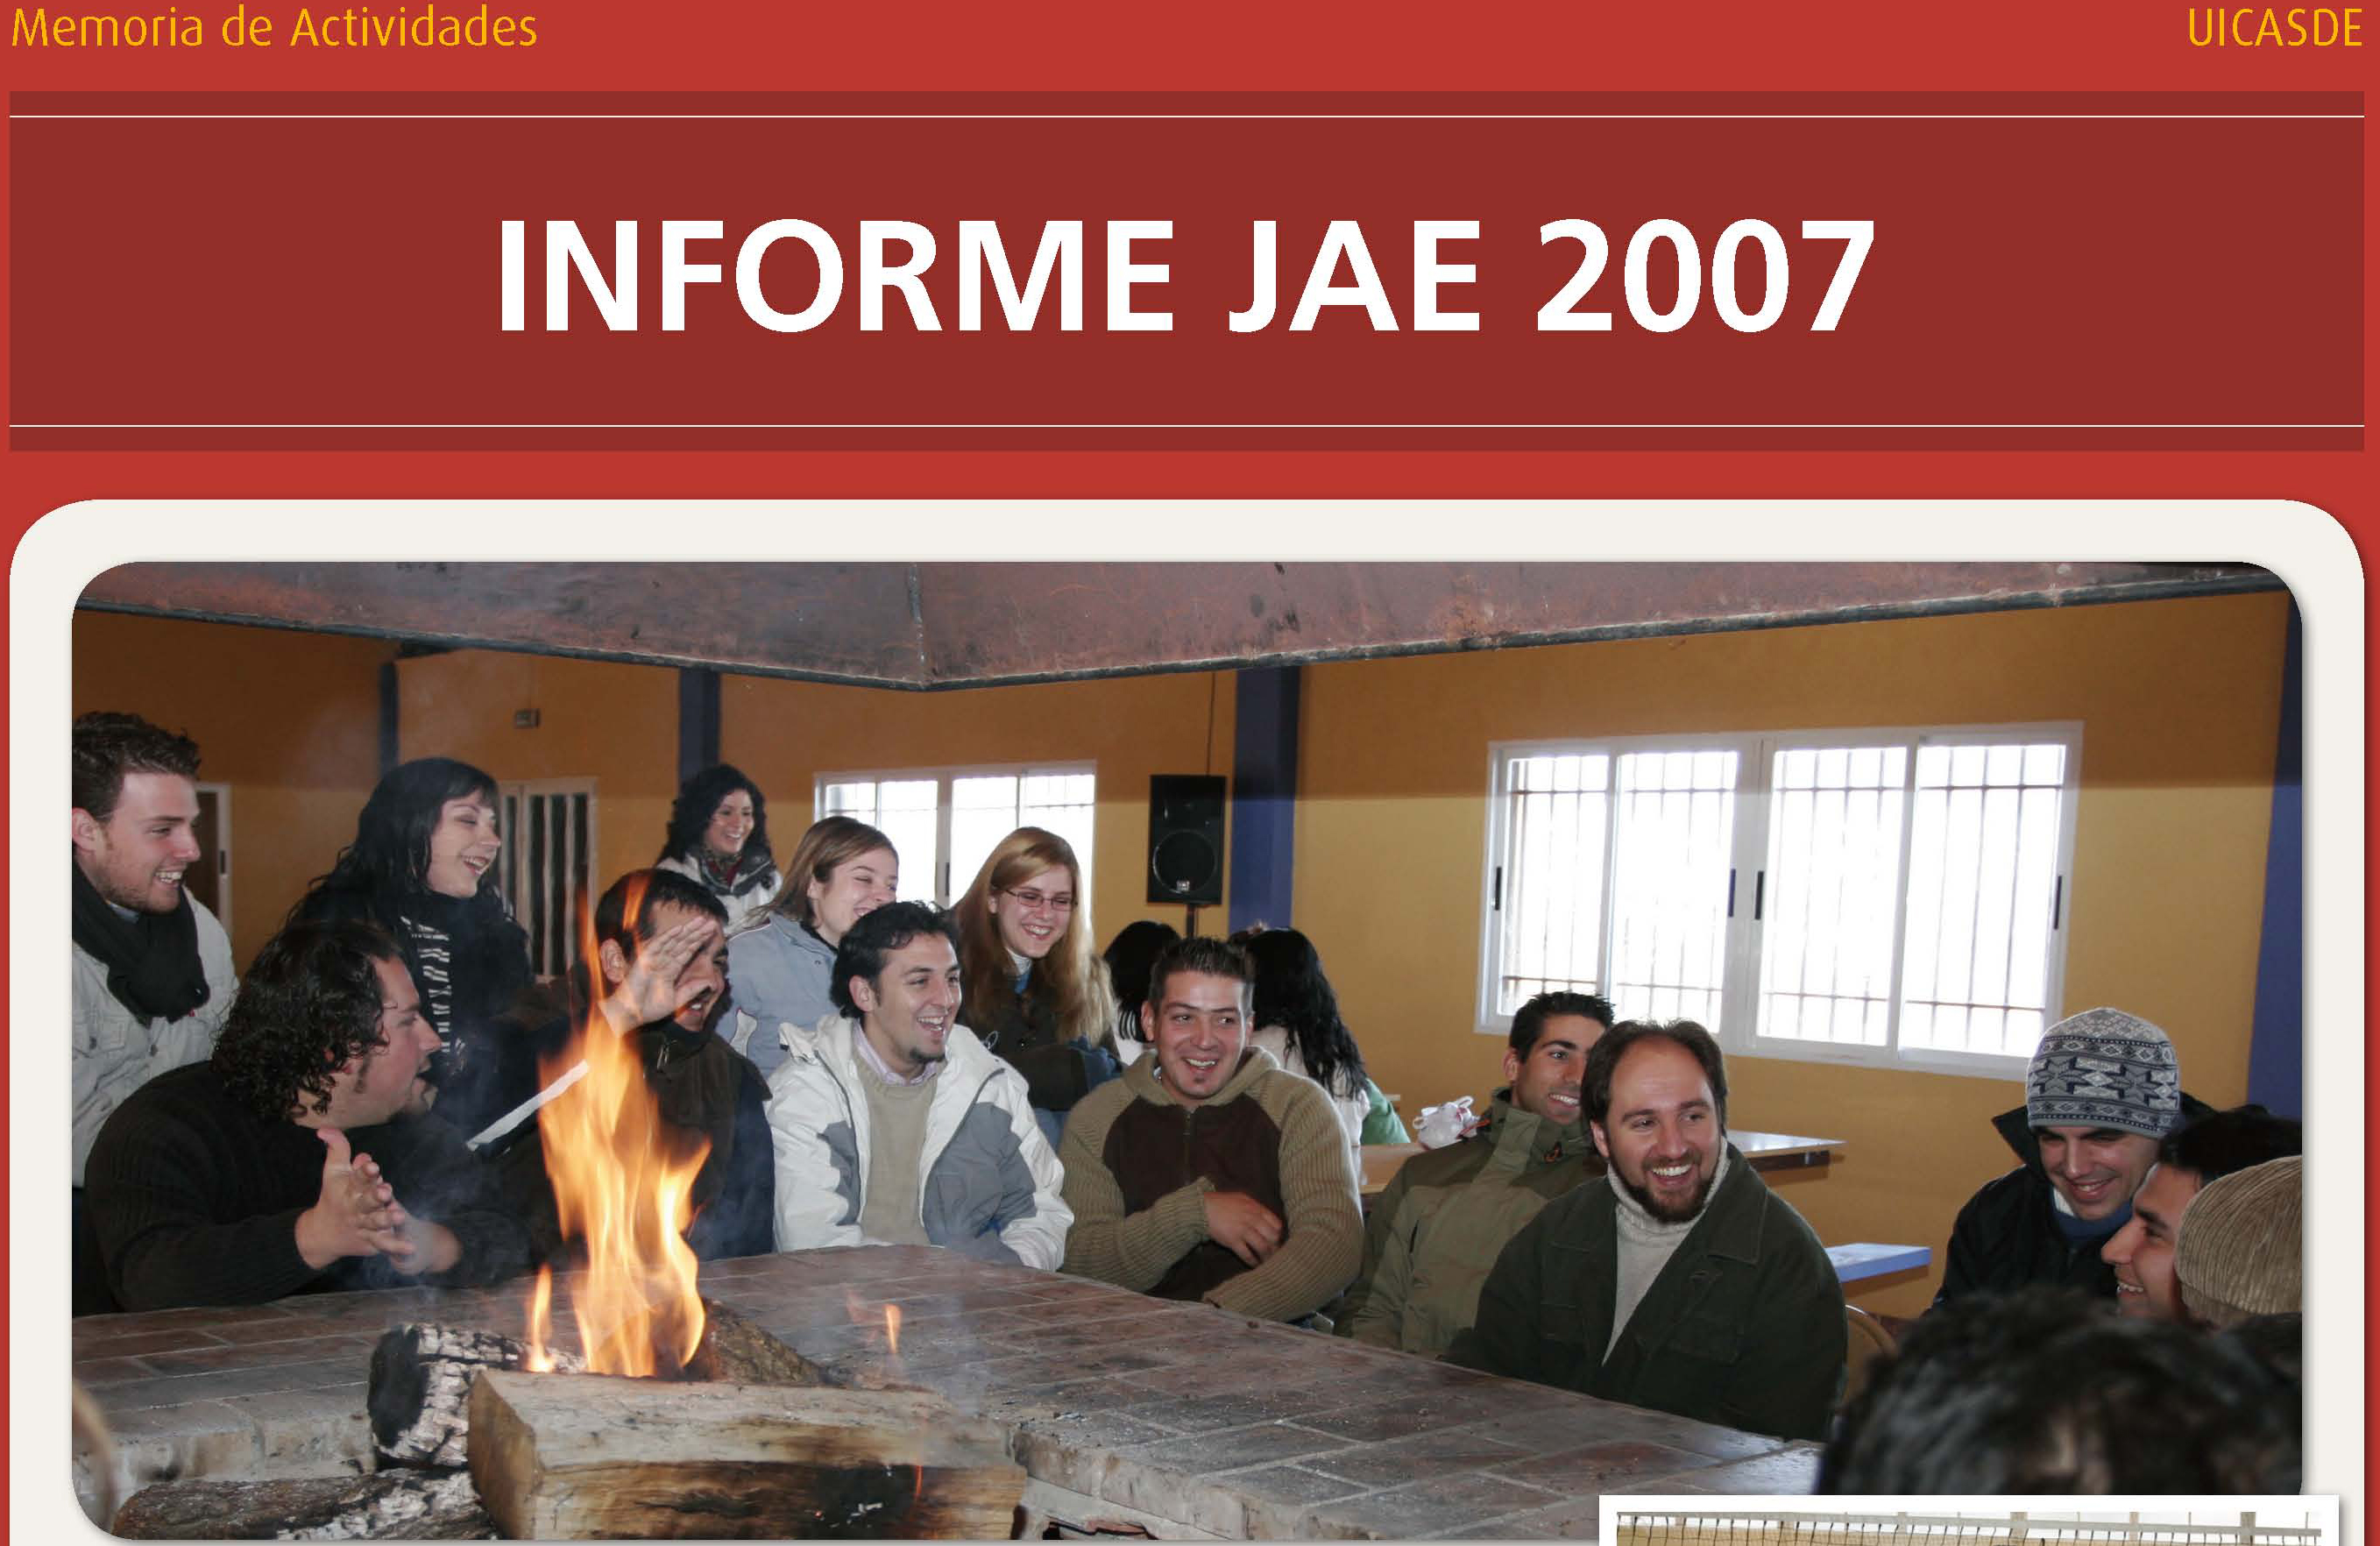 Informe JAE quinquenio 2007-2012